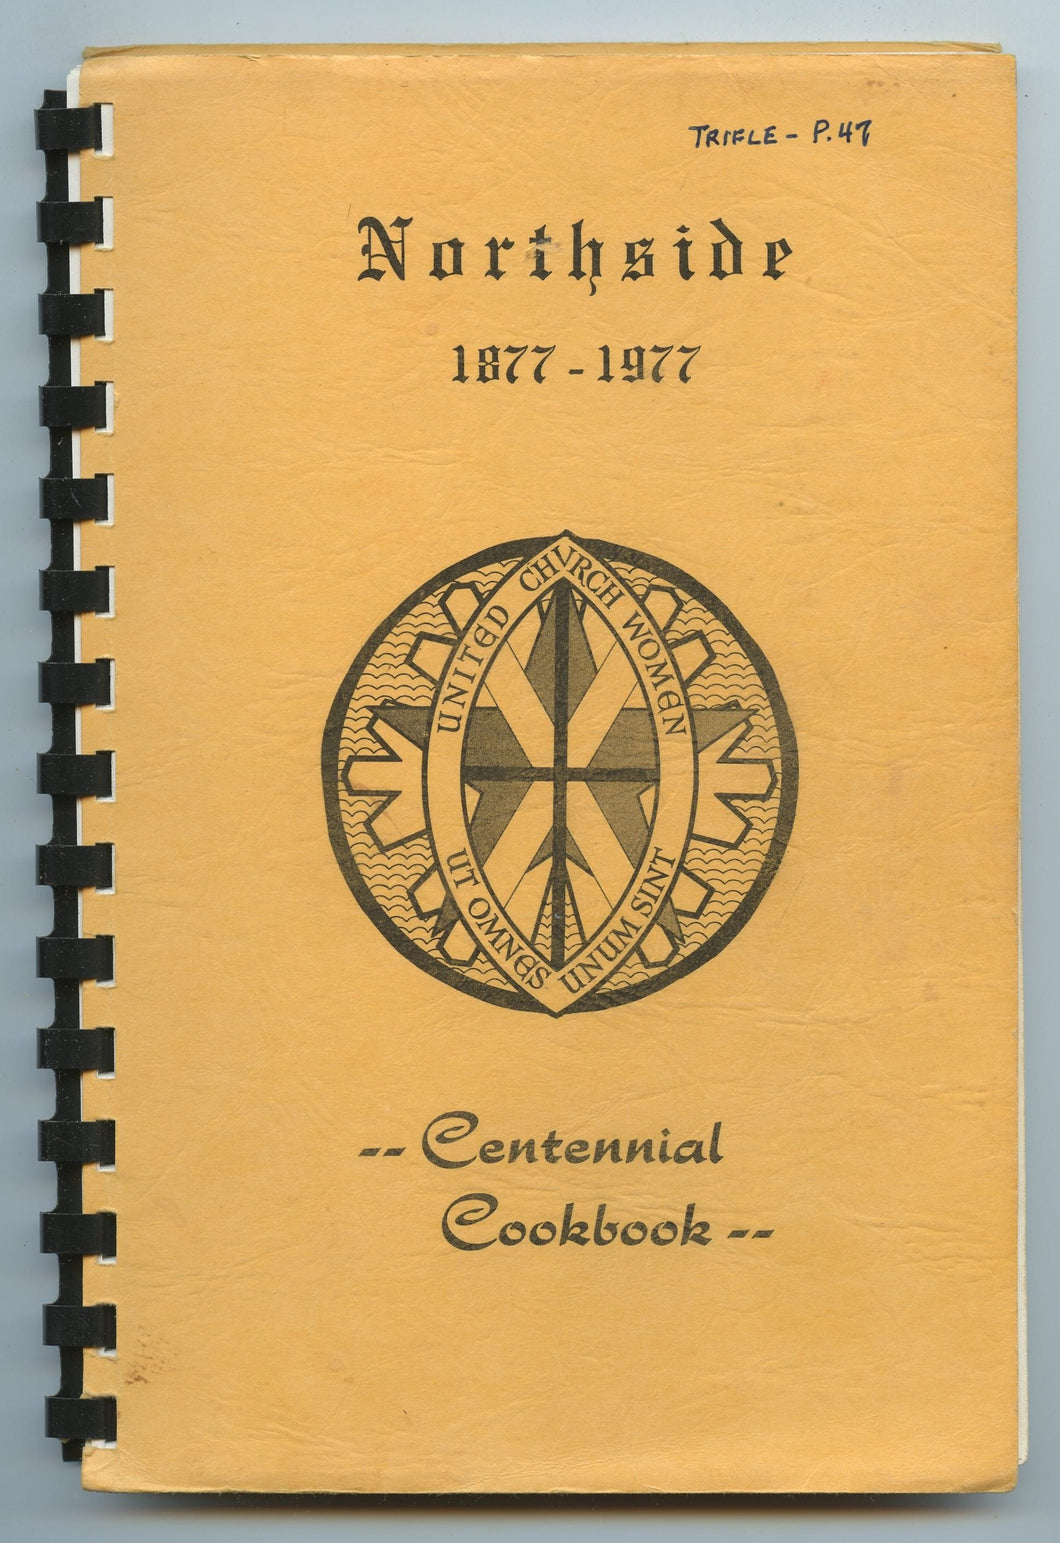 Northside 1877-1977 Centennial Cookbook